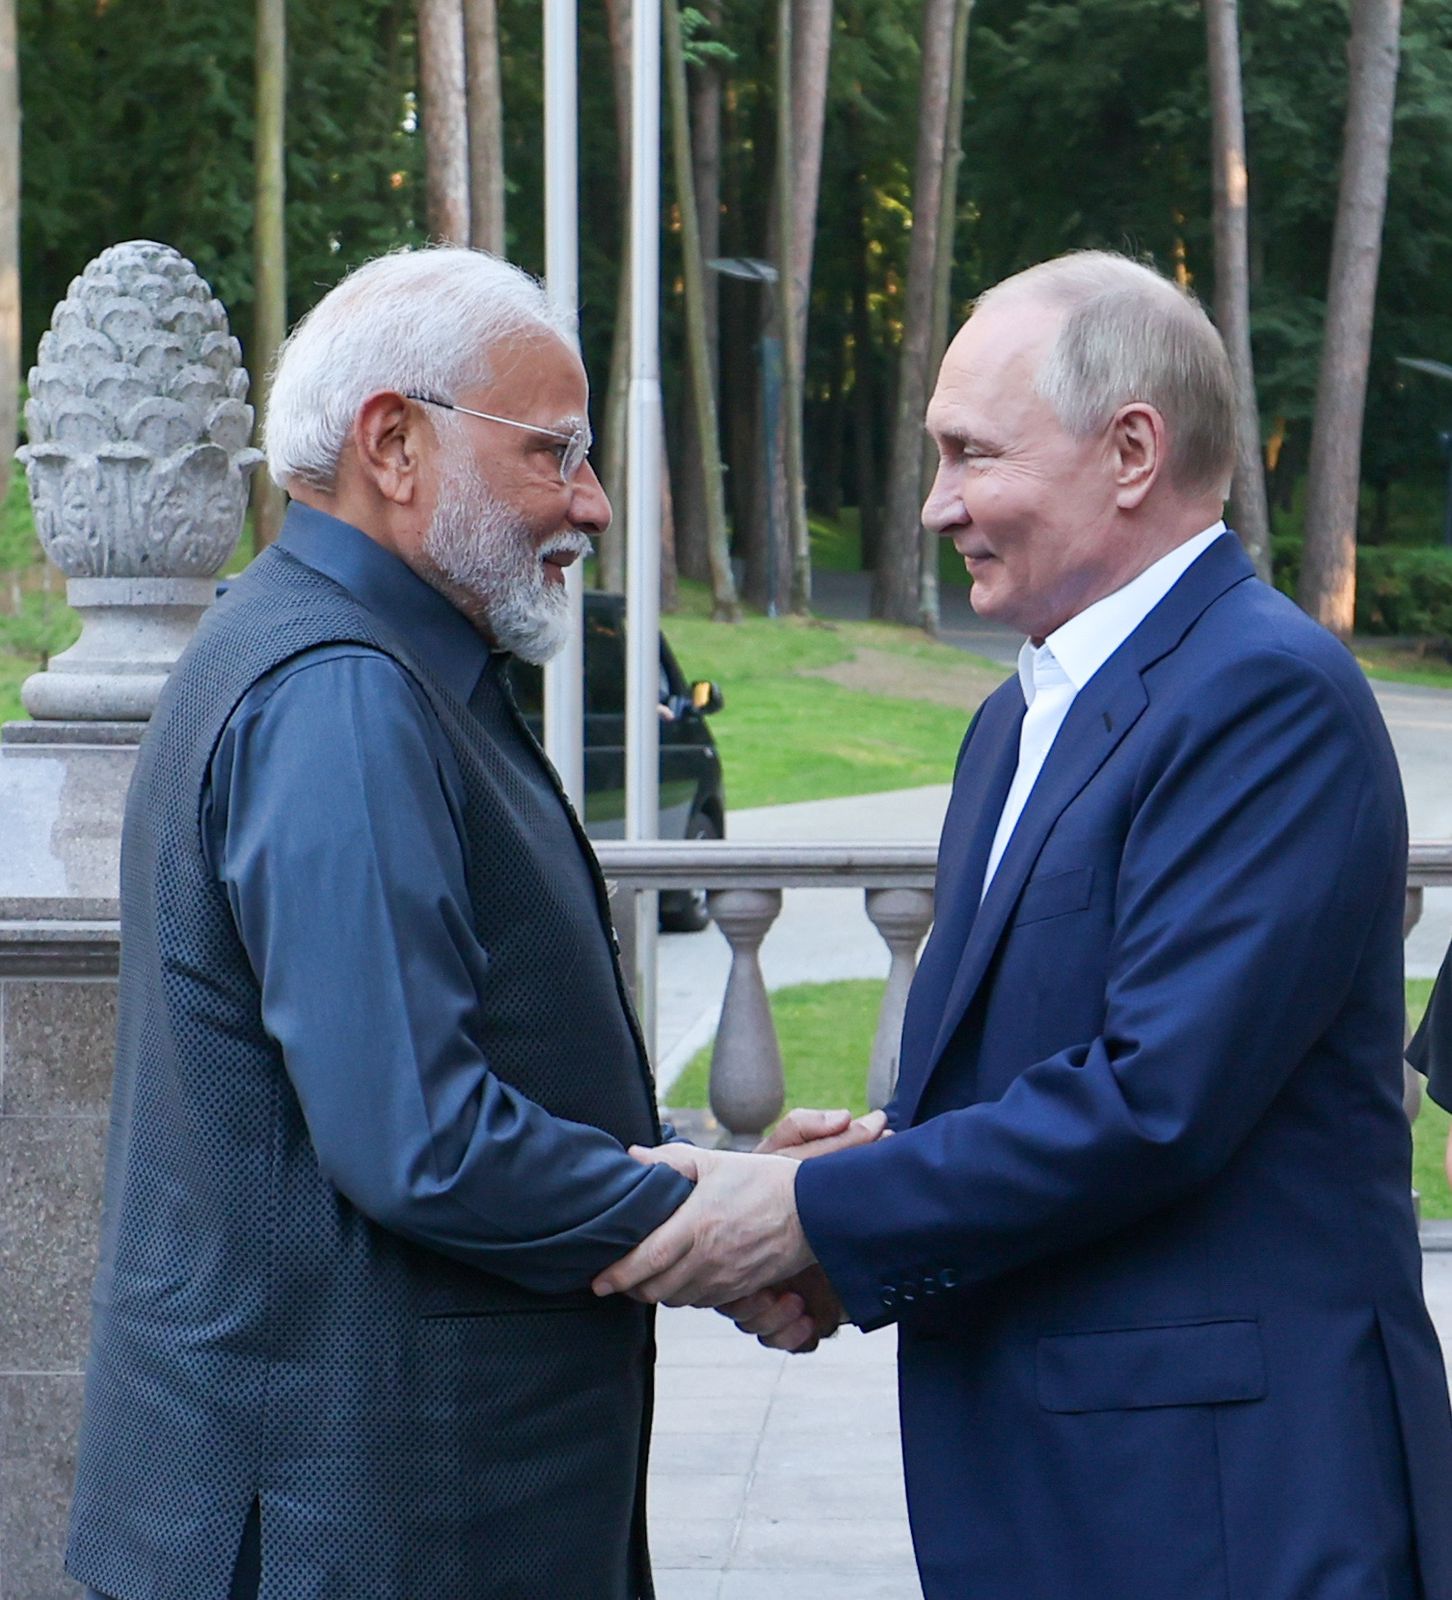 रूस से रिश्तों को लेकर चिंताओं के बावजूद रणनीतिक साझेदार बना रहेगा भारत : अमेरिका